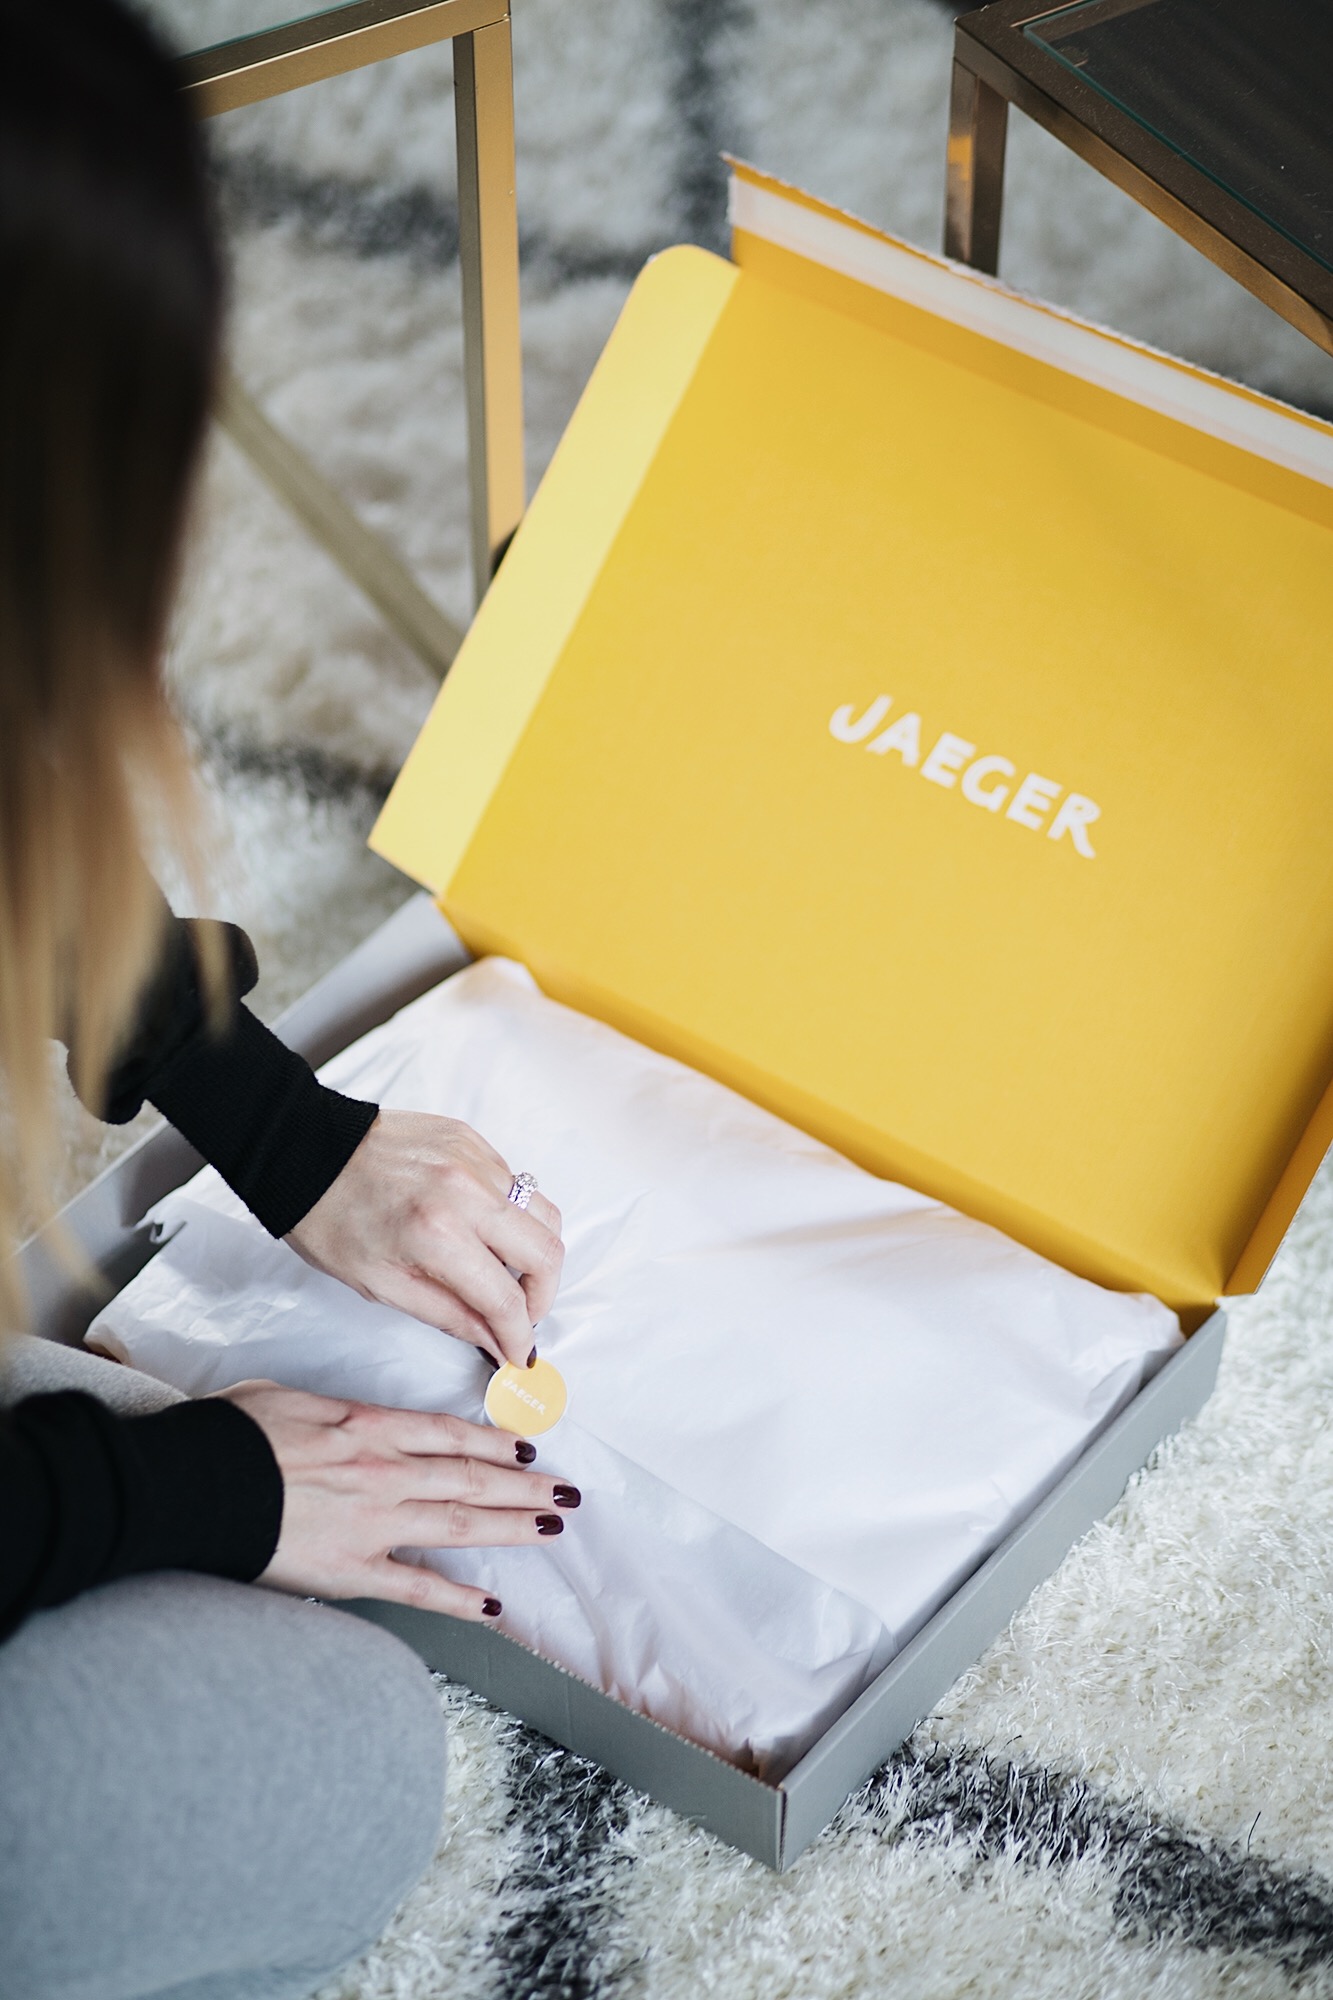 jaeger packaging